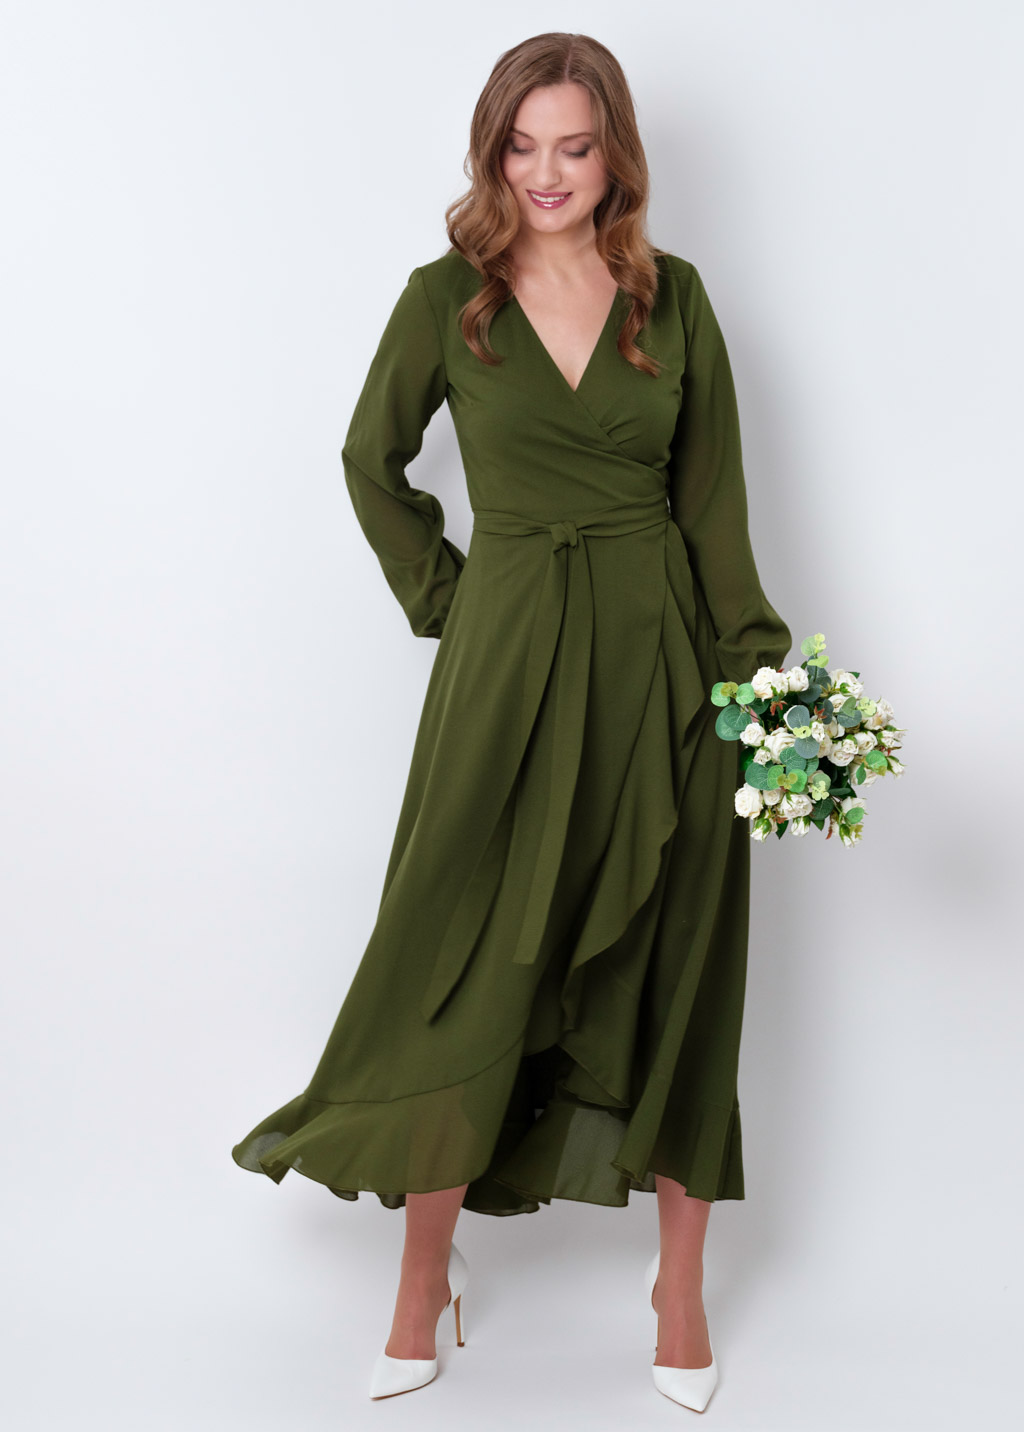 Olive green chiffon wrap dress